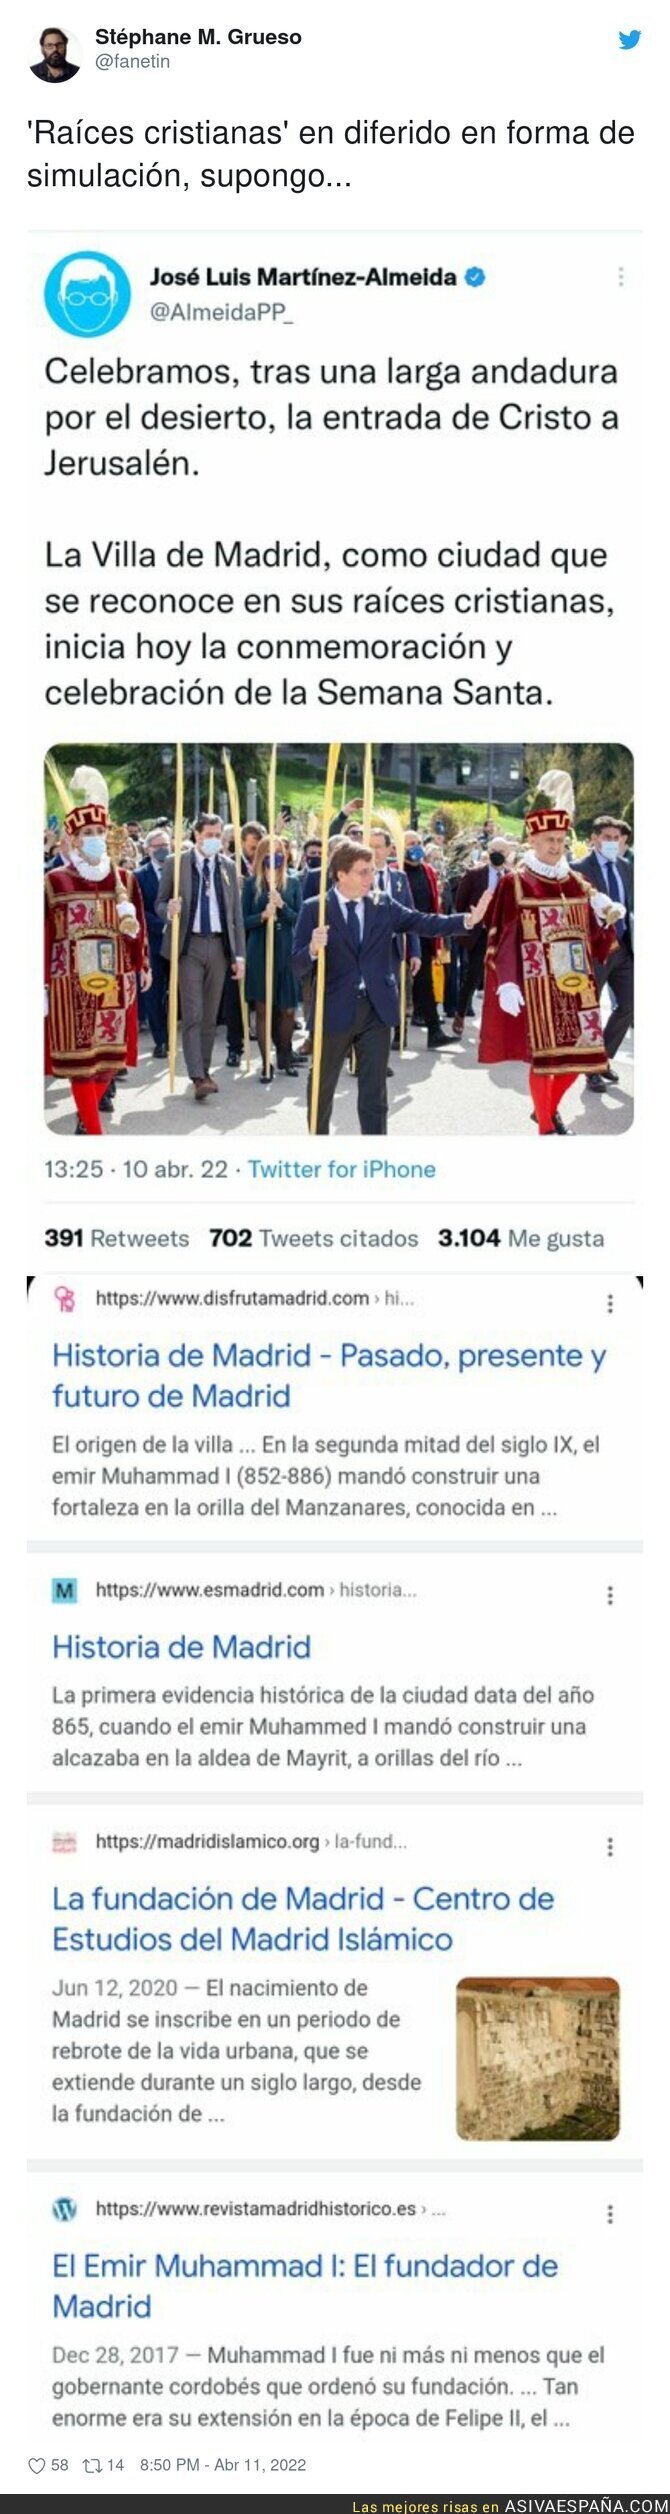 José Luis Martínez Almeida no conoce la historia de Madrid